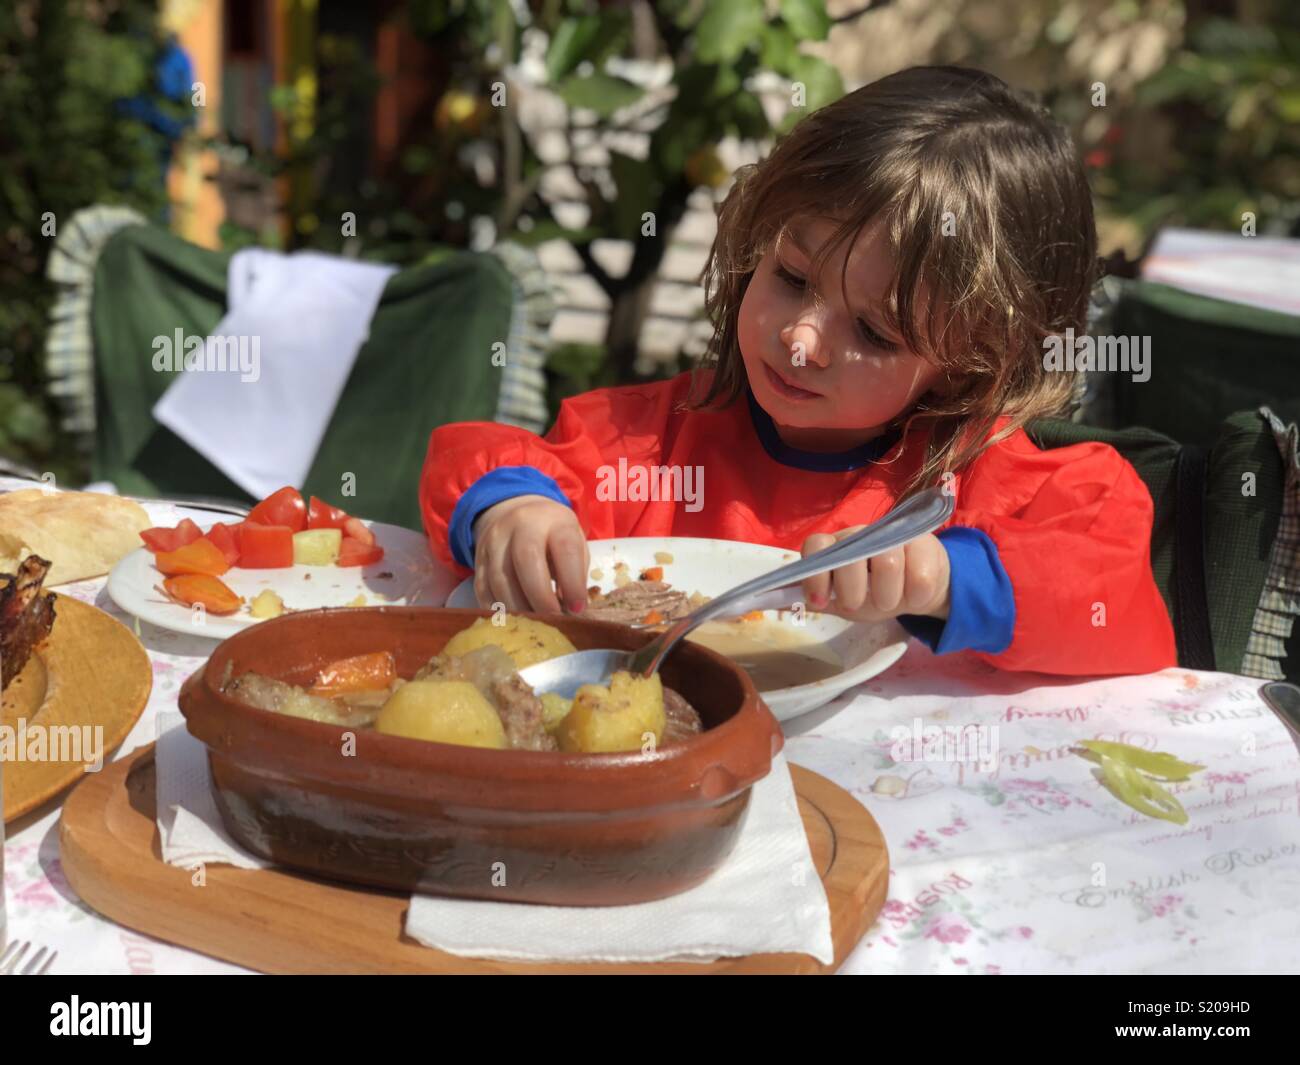 Little girl eating at restaurant Stock Photo